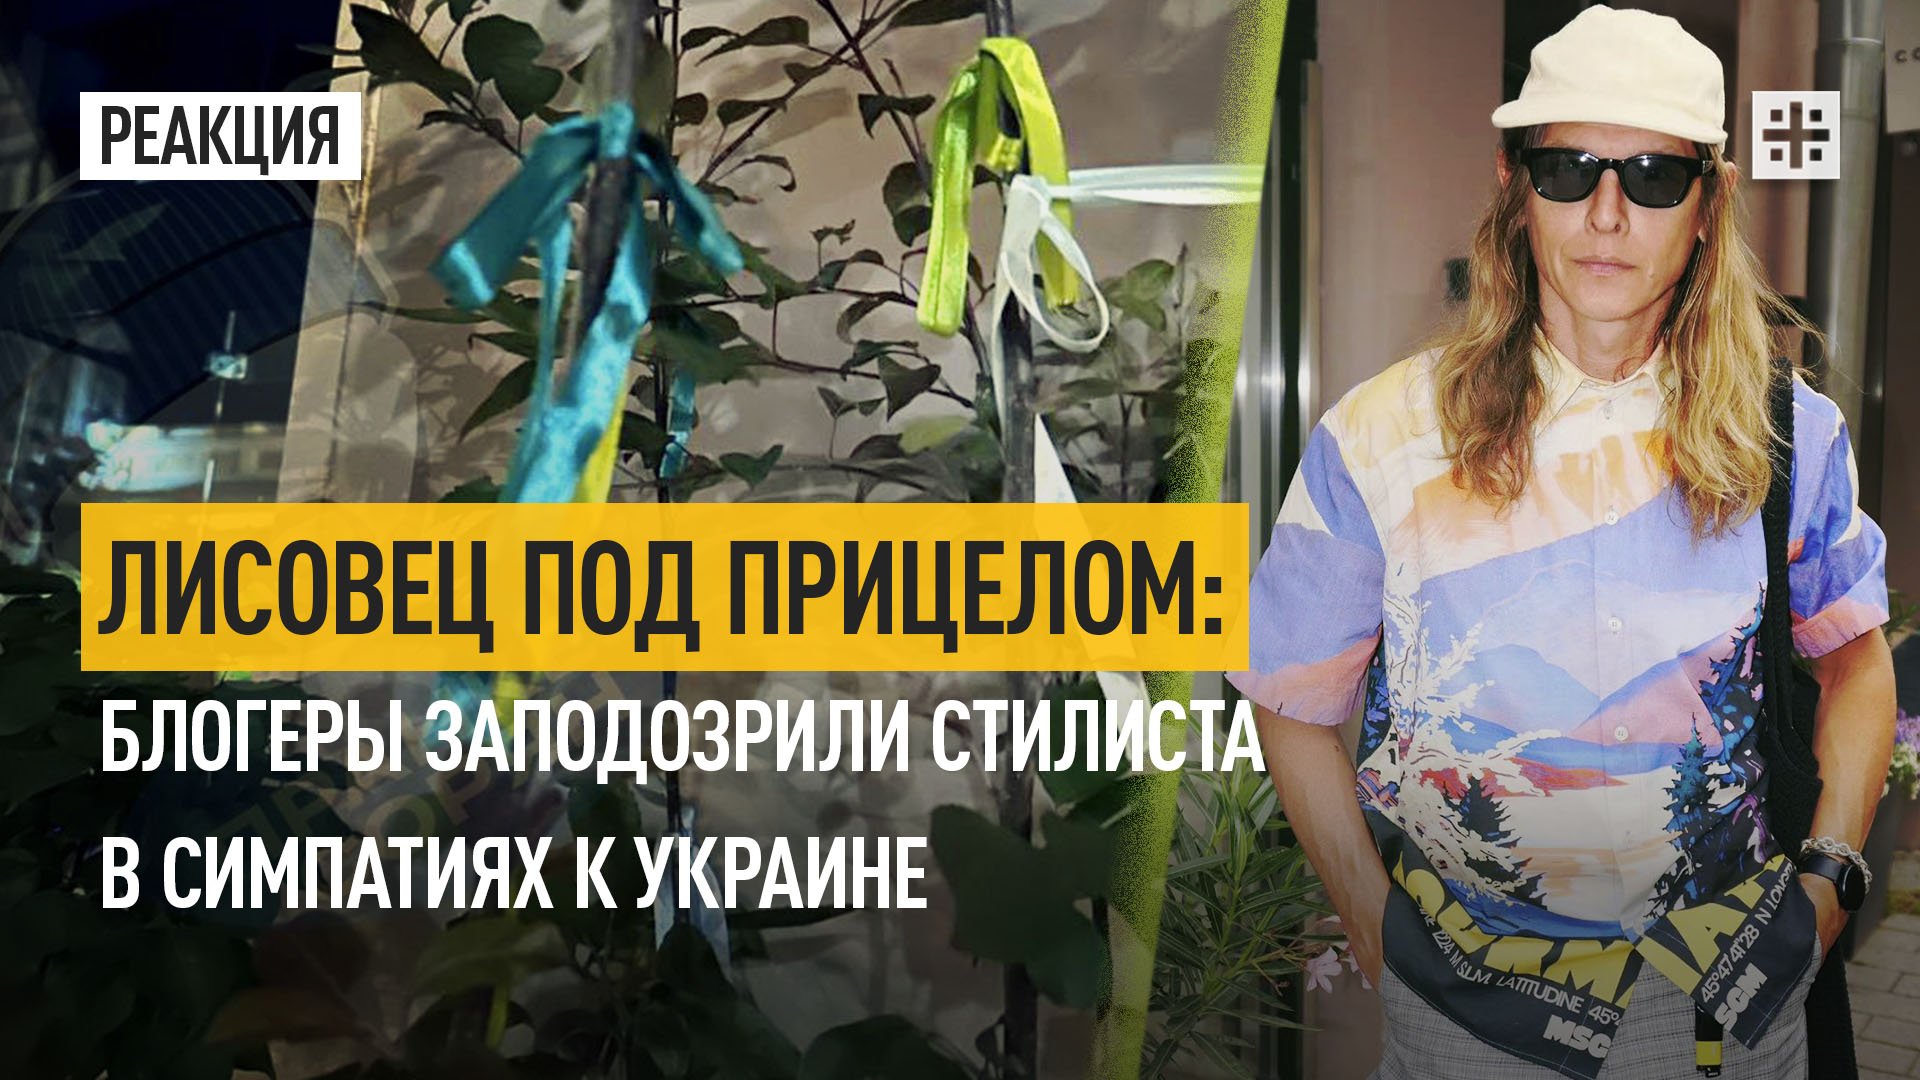 Лисовец под прицелом: Блогеры заподозрили стилиста в симпатиях к Украине